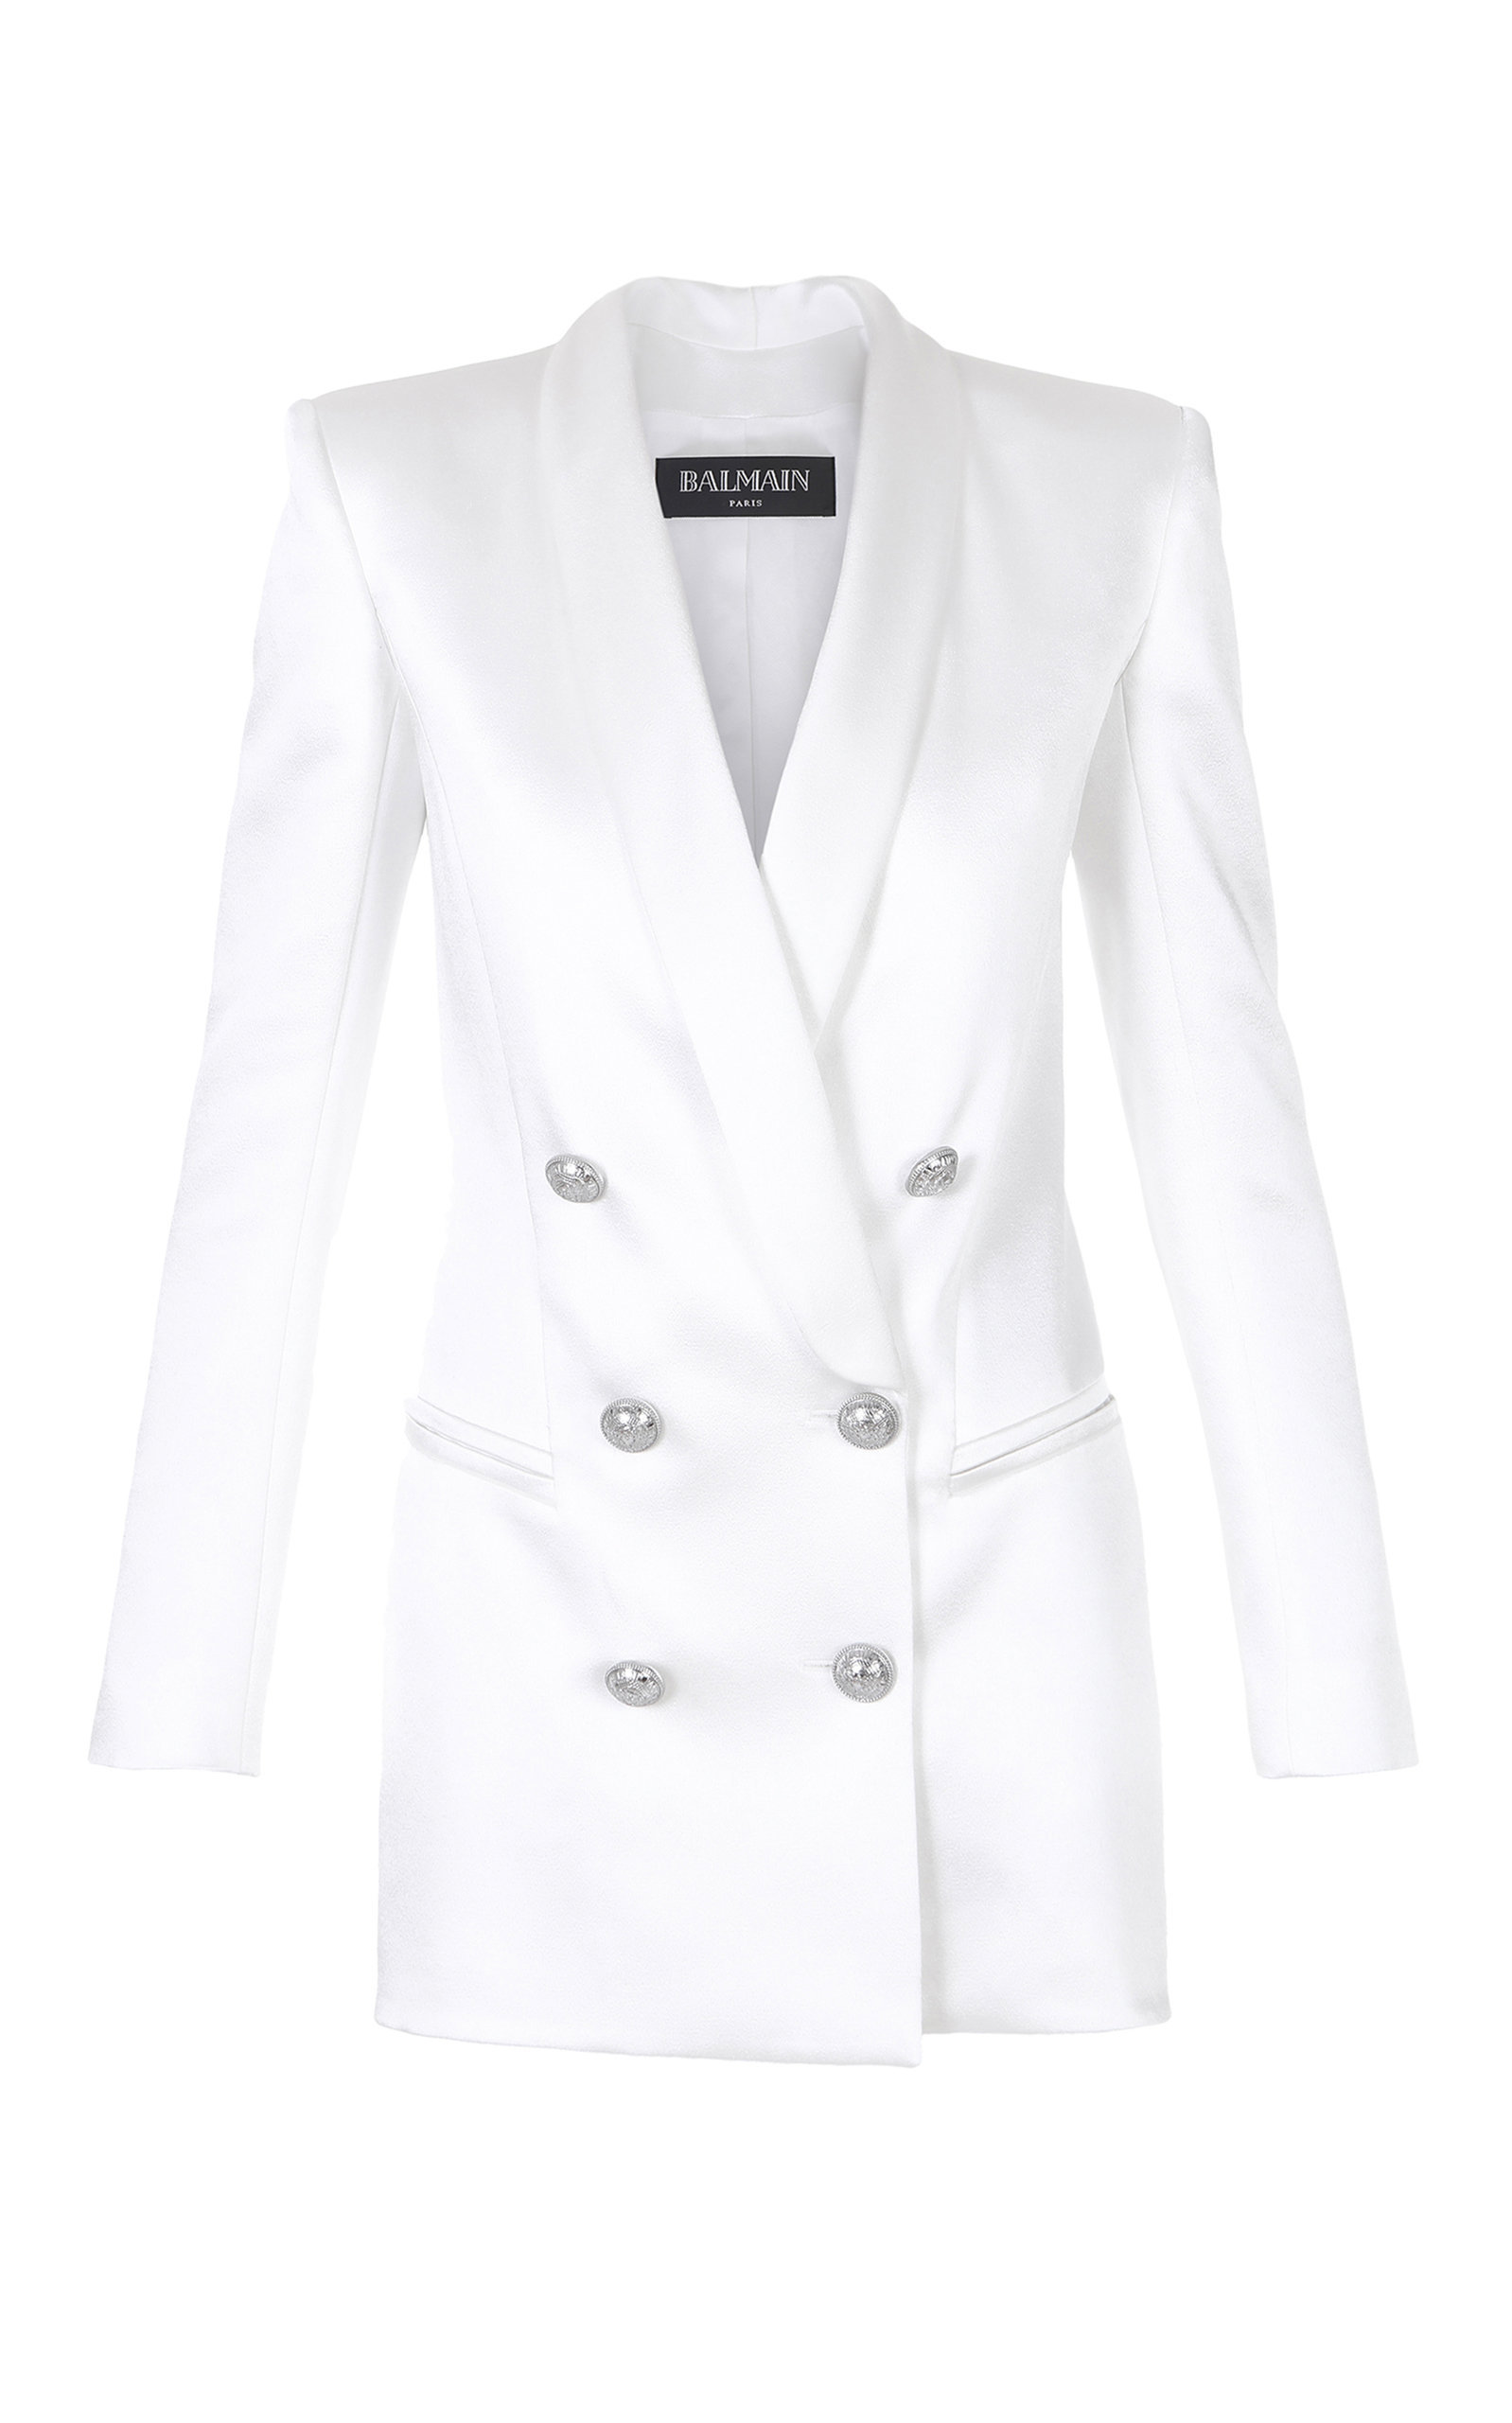 balmain hvit blazer kjole on sale 9bedd 658b7